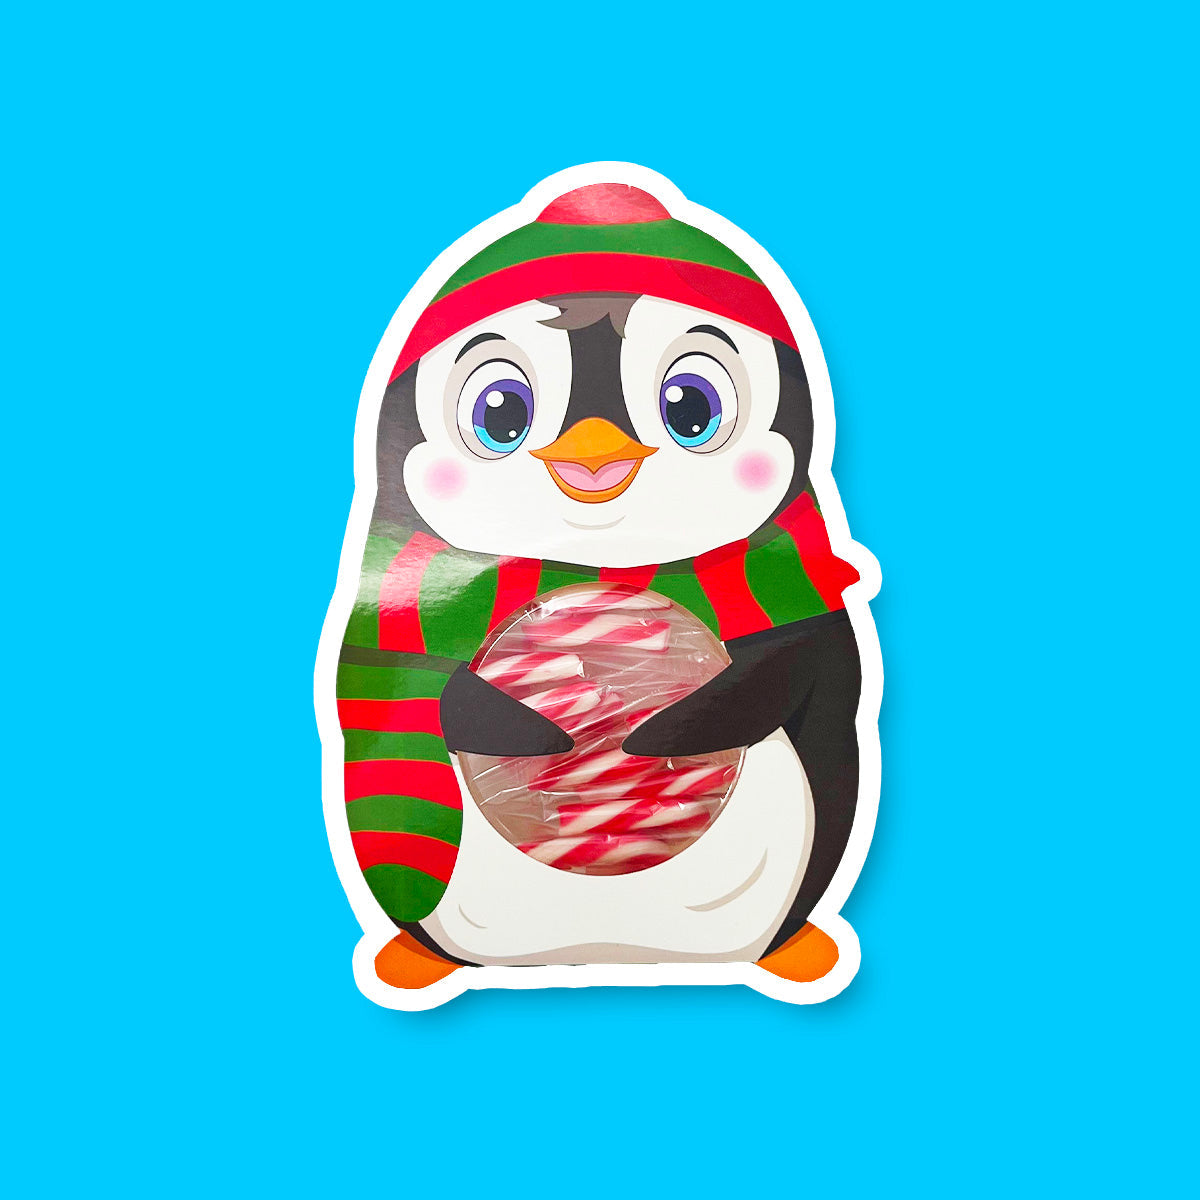 Un pingouin sur fond bleu en bonnet et écharpe à stries rouges et vertes, avec un ventre transparent qui dévoile les cannes à sucre rouges et blanches